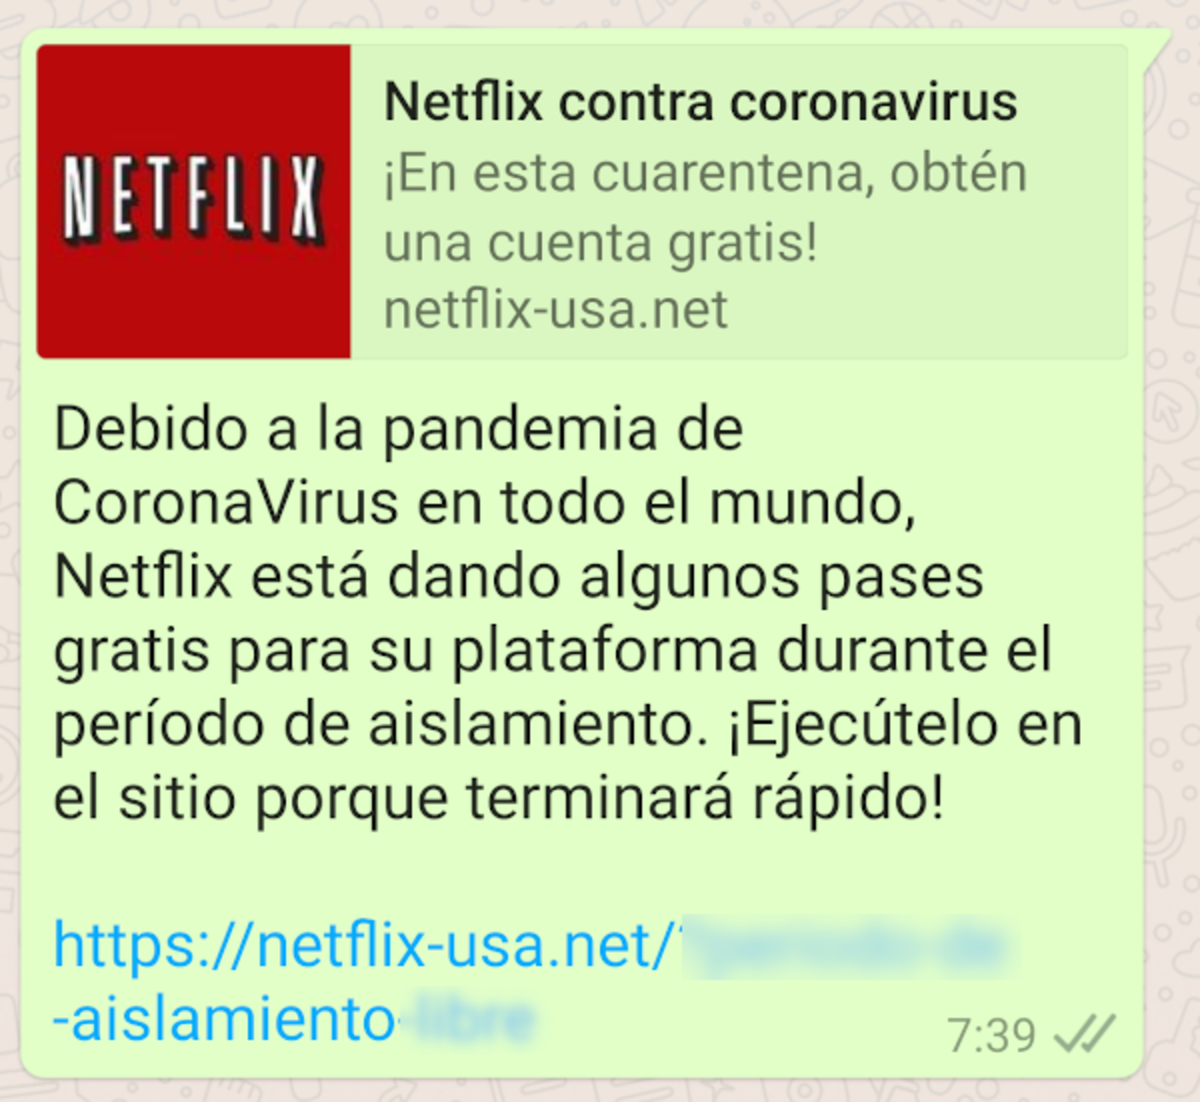 Nerflix gratis por el coronavirus: mensaje de WhatsApp